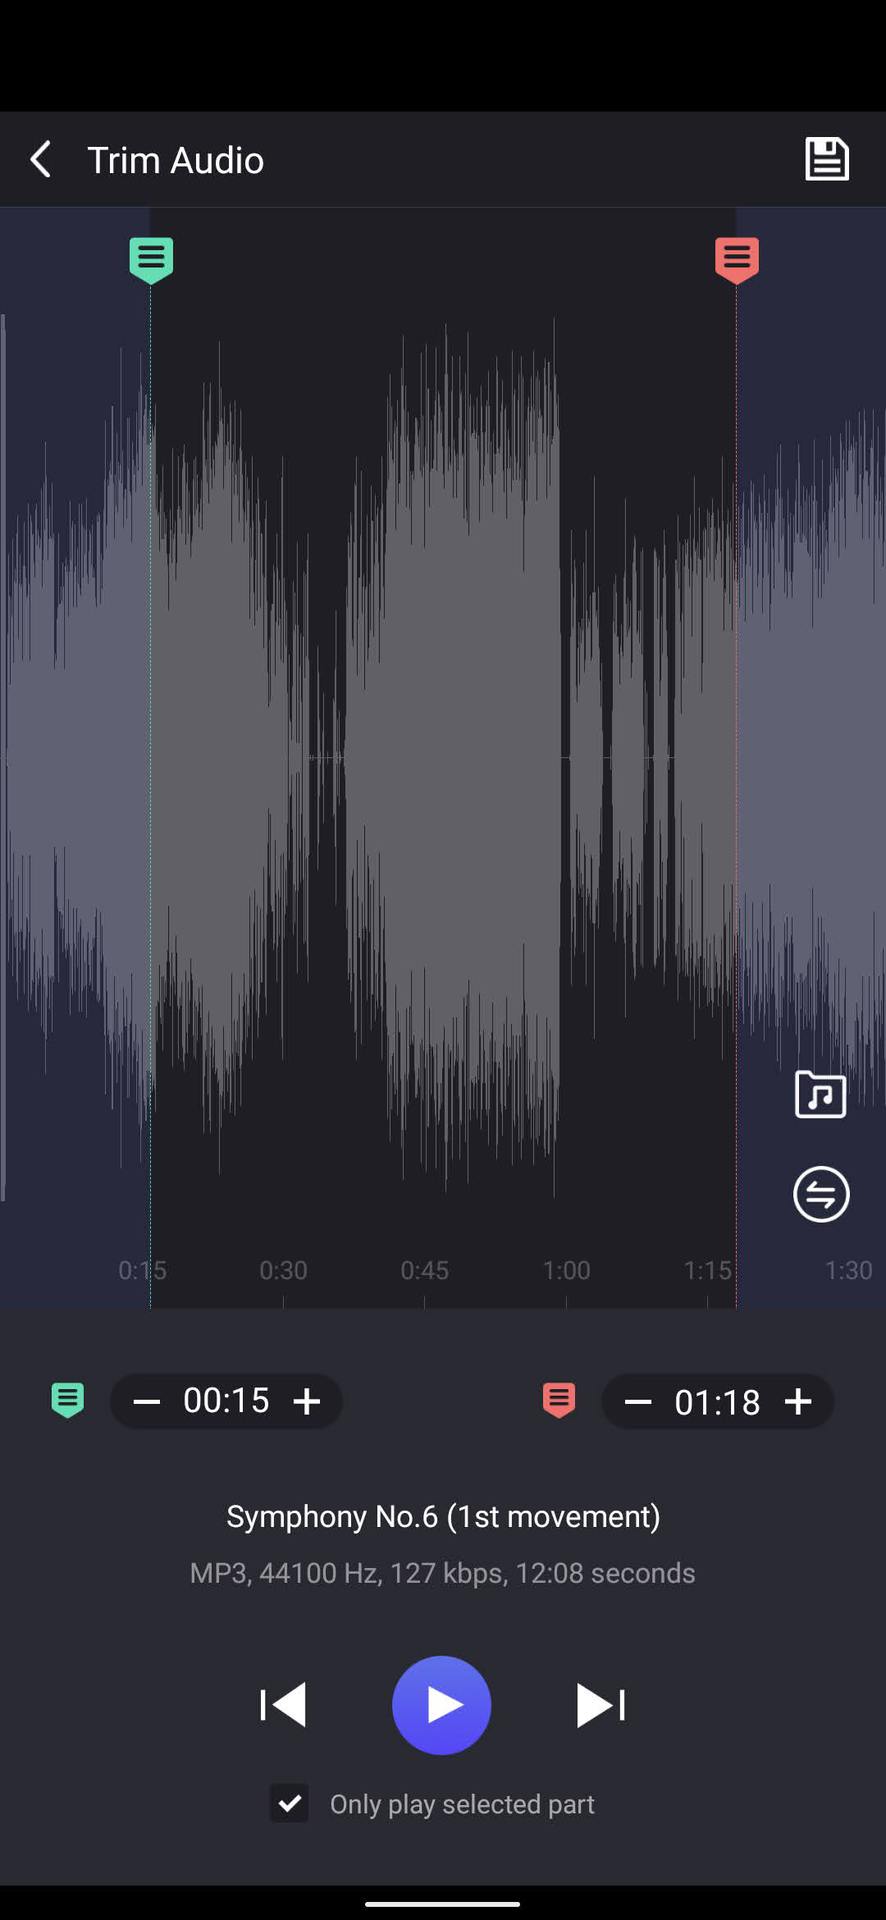 Trim audio using Music Editor 3